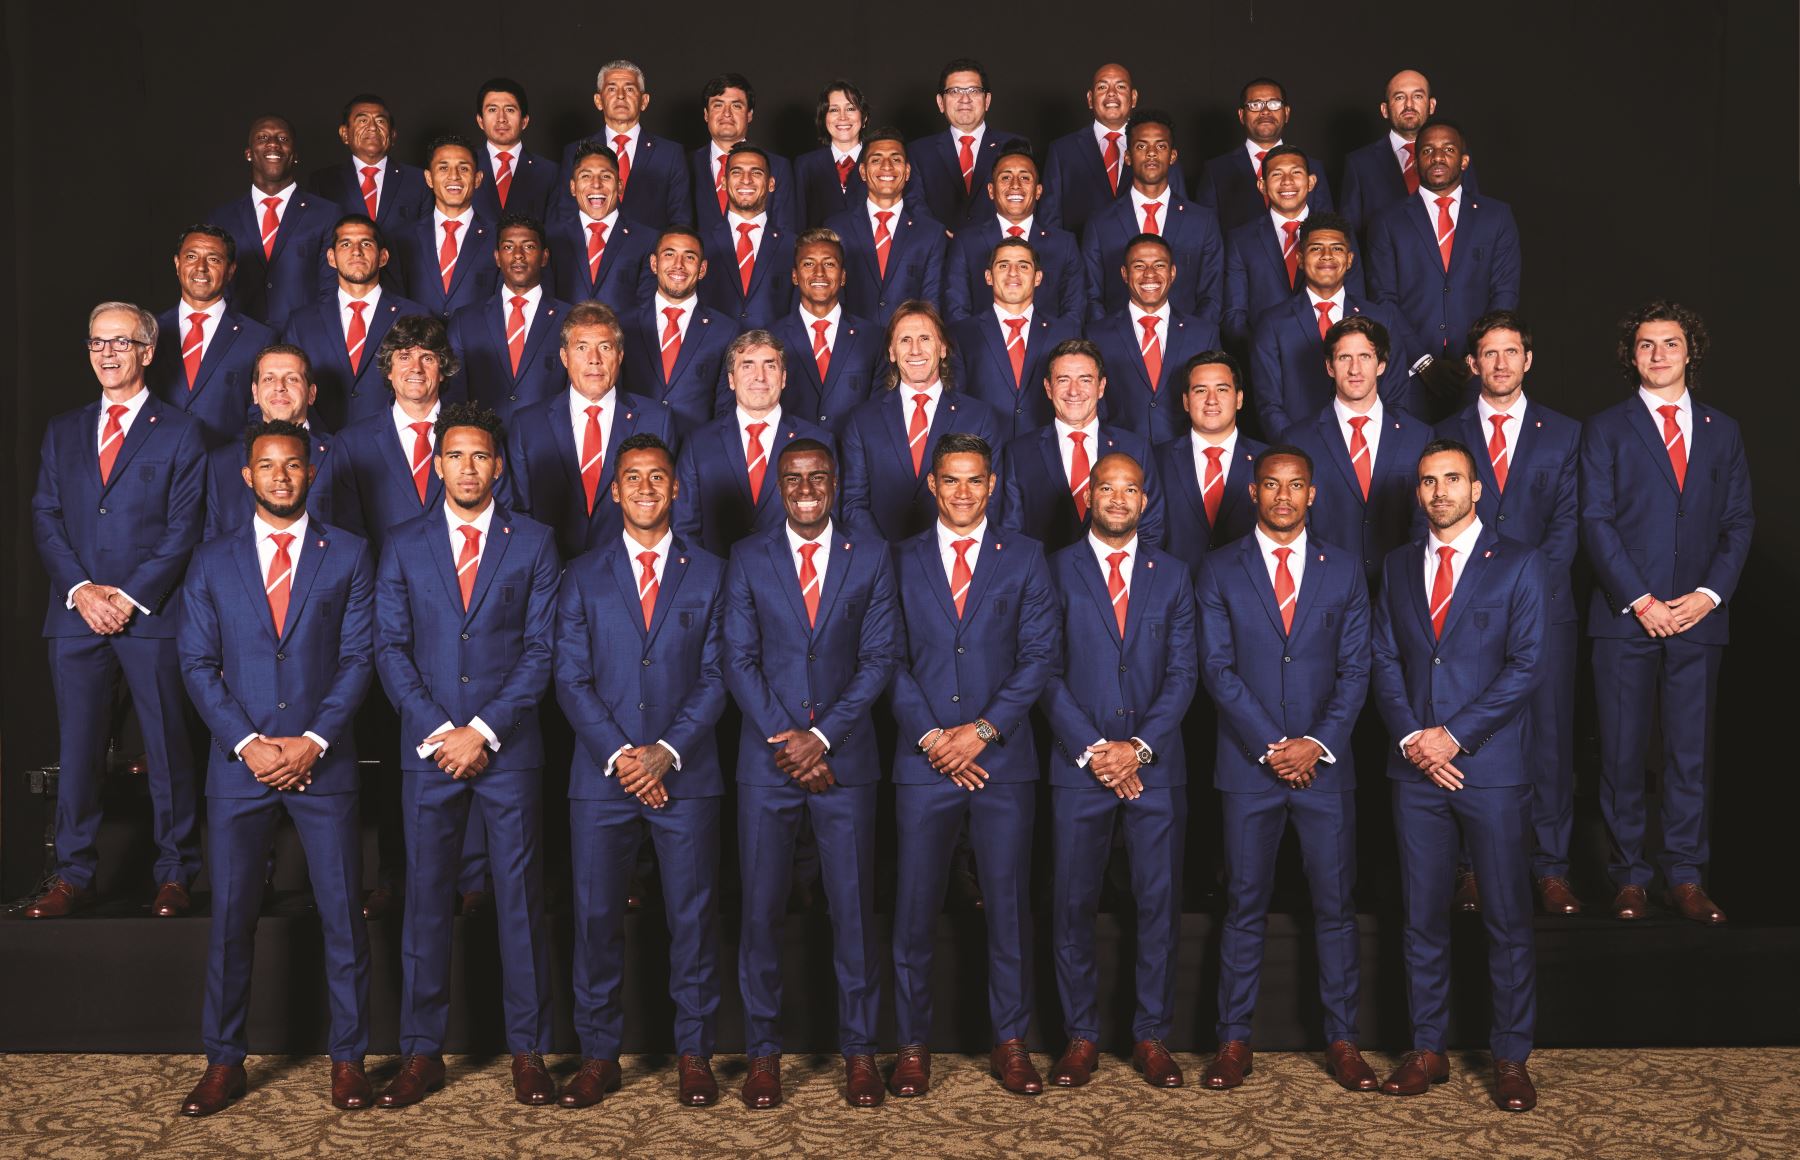 El plantel completo de la selección peruana posó con los trajes de gala.